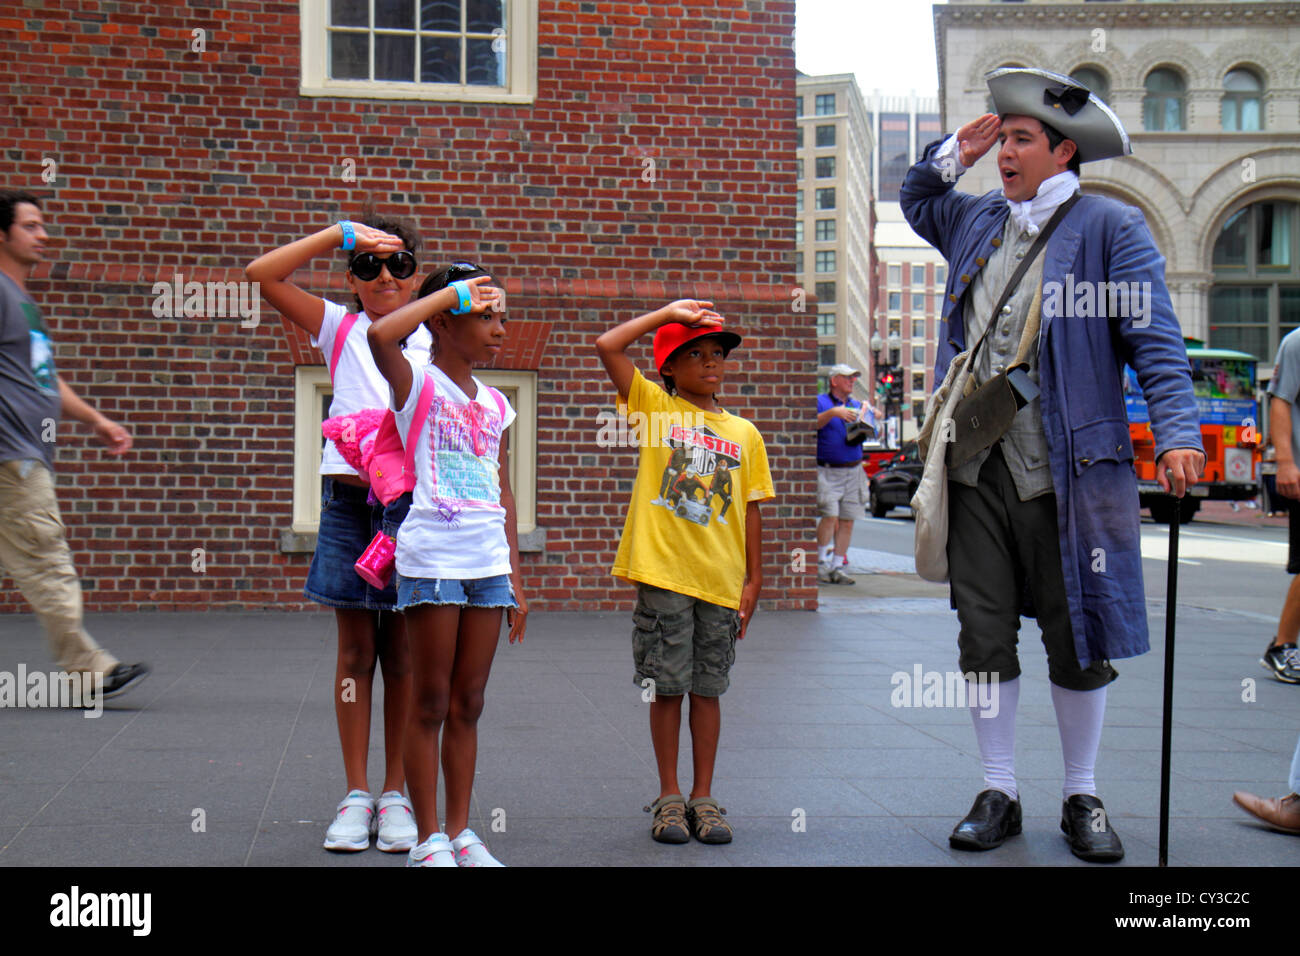 Boston Massachusetts, Washington Street, The Freedom Trail, Old State House, historisches Gebäude, kostümierter Schauspieler, Schauspieler, Mann Männer Erwachsene Erwachsene Erwachsene, Patriot Stockfoto